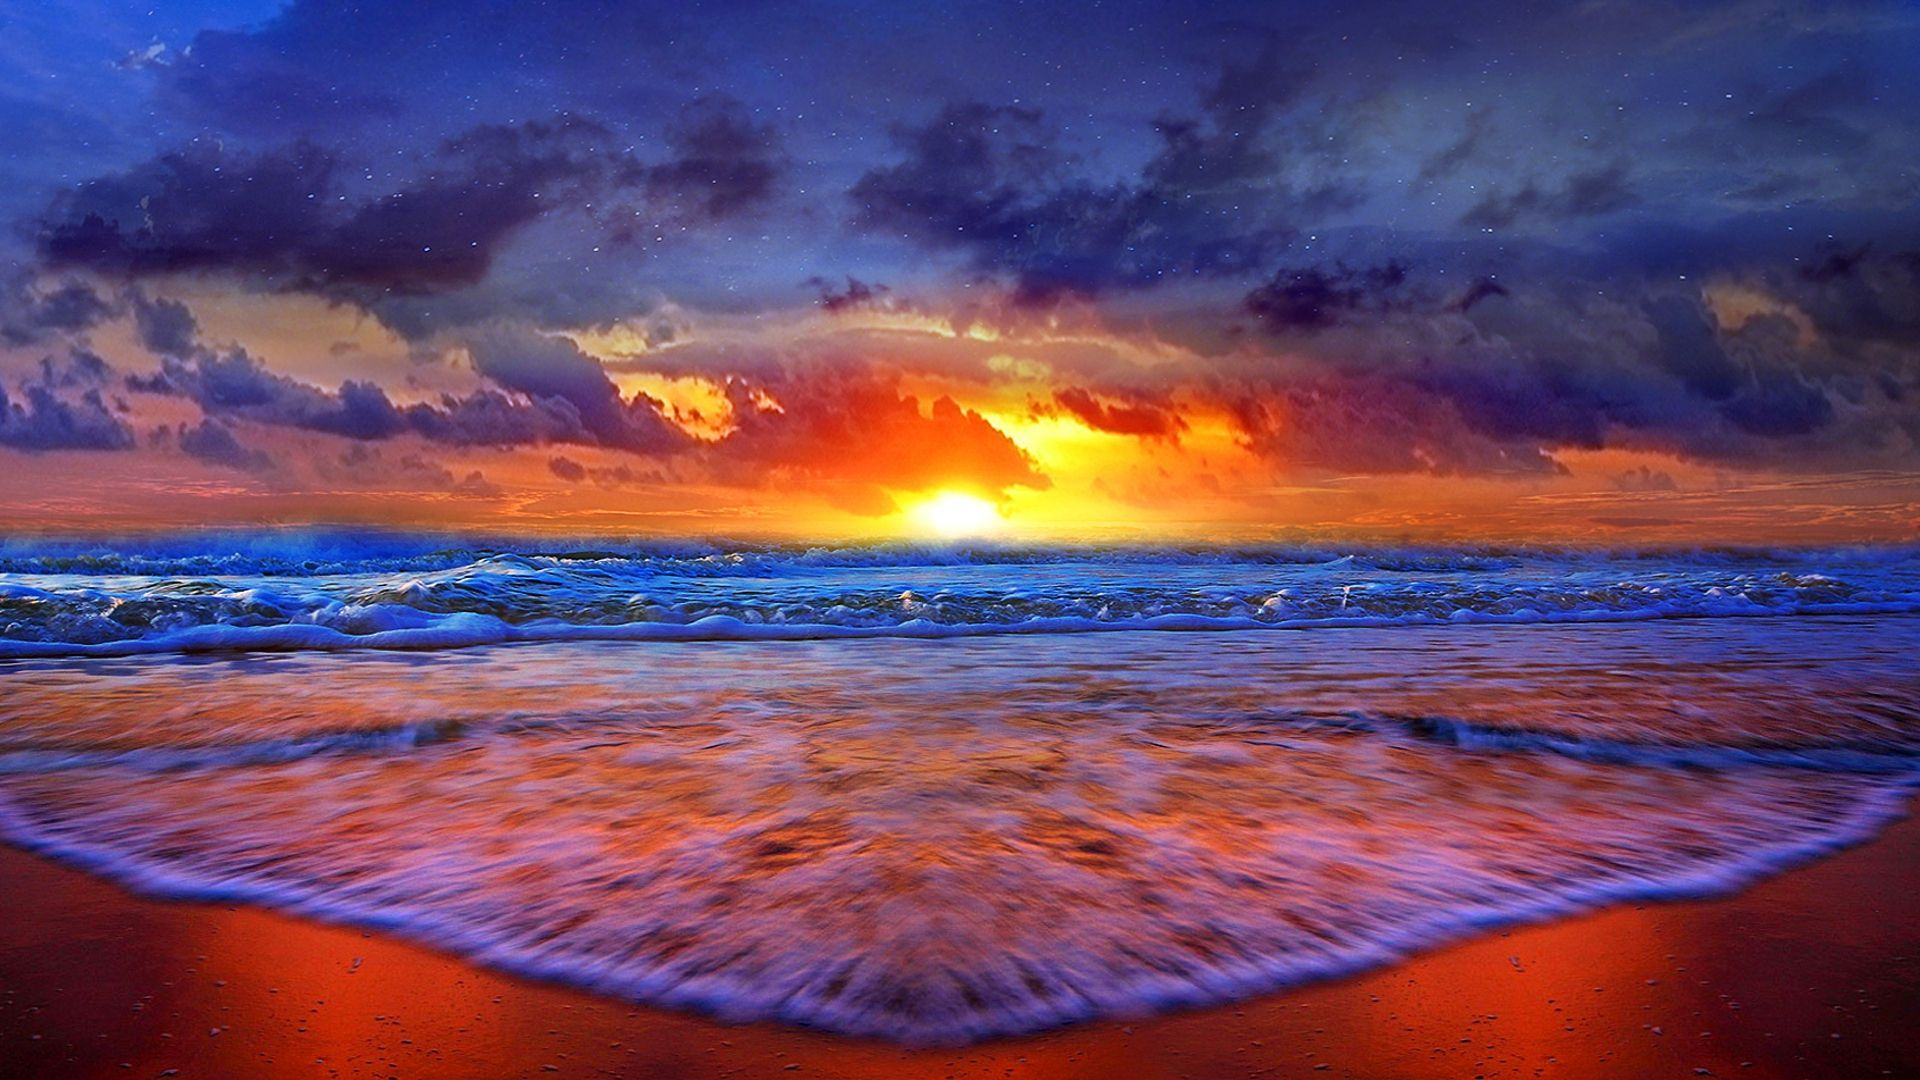 1920x1080 Beach Sunset Desktop Wallpapers Top Free Beach Sunset Desktop Backgrounds